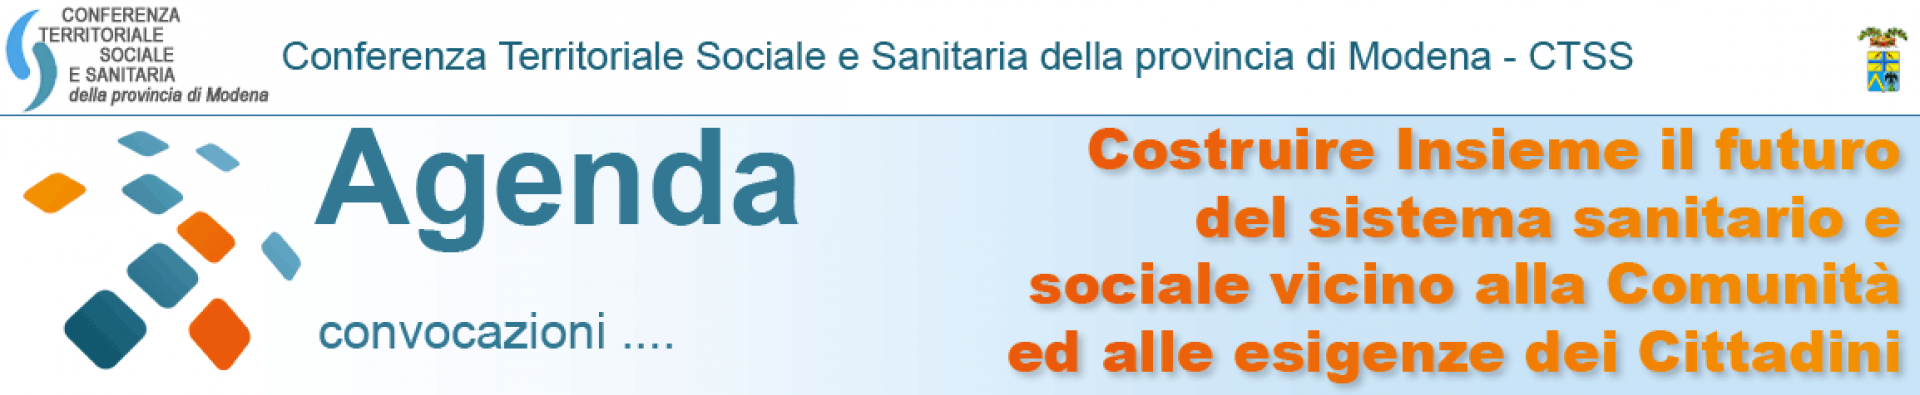 CTSS - Conferenza Territoriale Sociale e Sanitaria della provincia di Modena - Agenda - convocazioni - Costruire Insieme il futuro del sistema sanitario e sociale vicino alla Comunità ed alle esigenze dei Cittadini - sulla destra in alto logo della Provincia di Modena